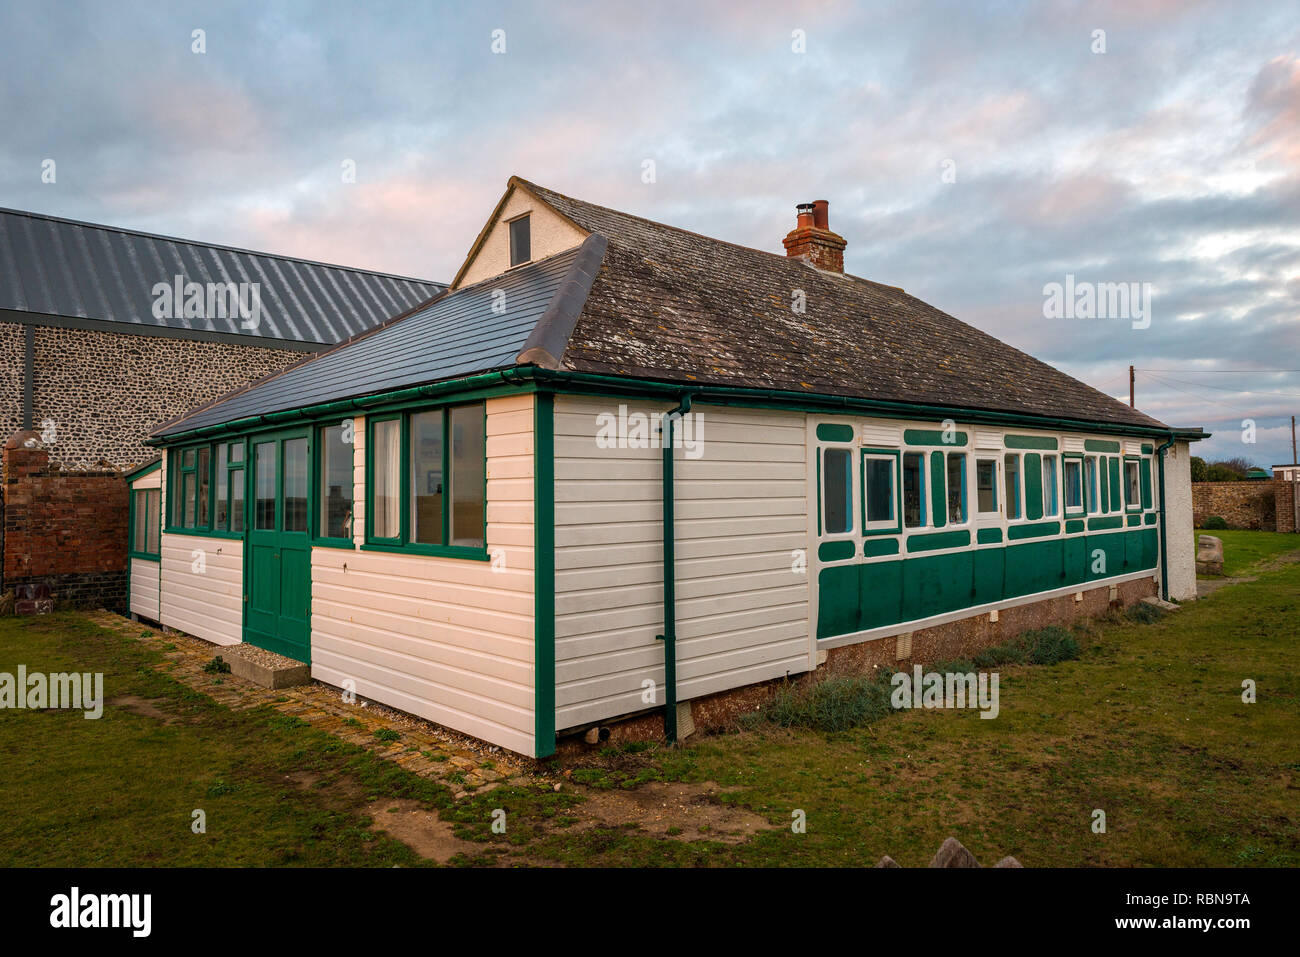 Ancien wagon de chemin de fer converti en une maison de vacances à West Wittering, West Sussex, UK Banque D'Images